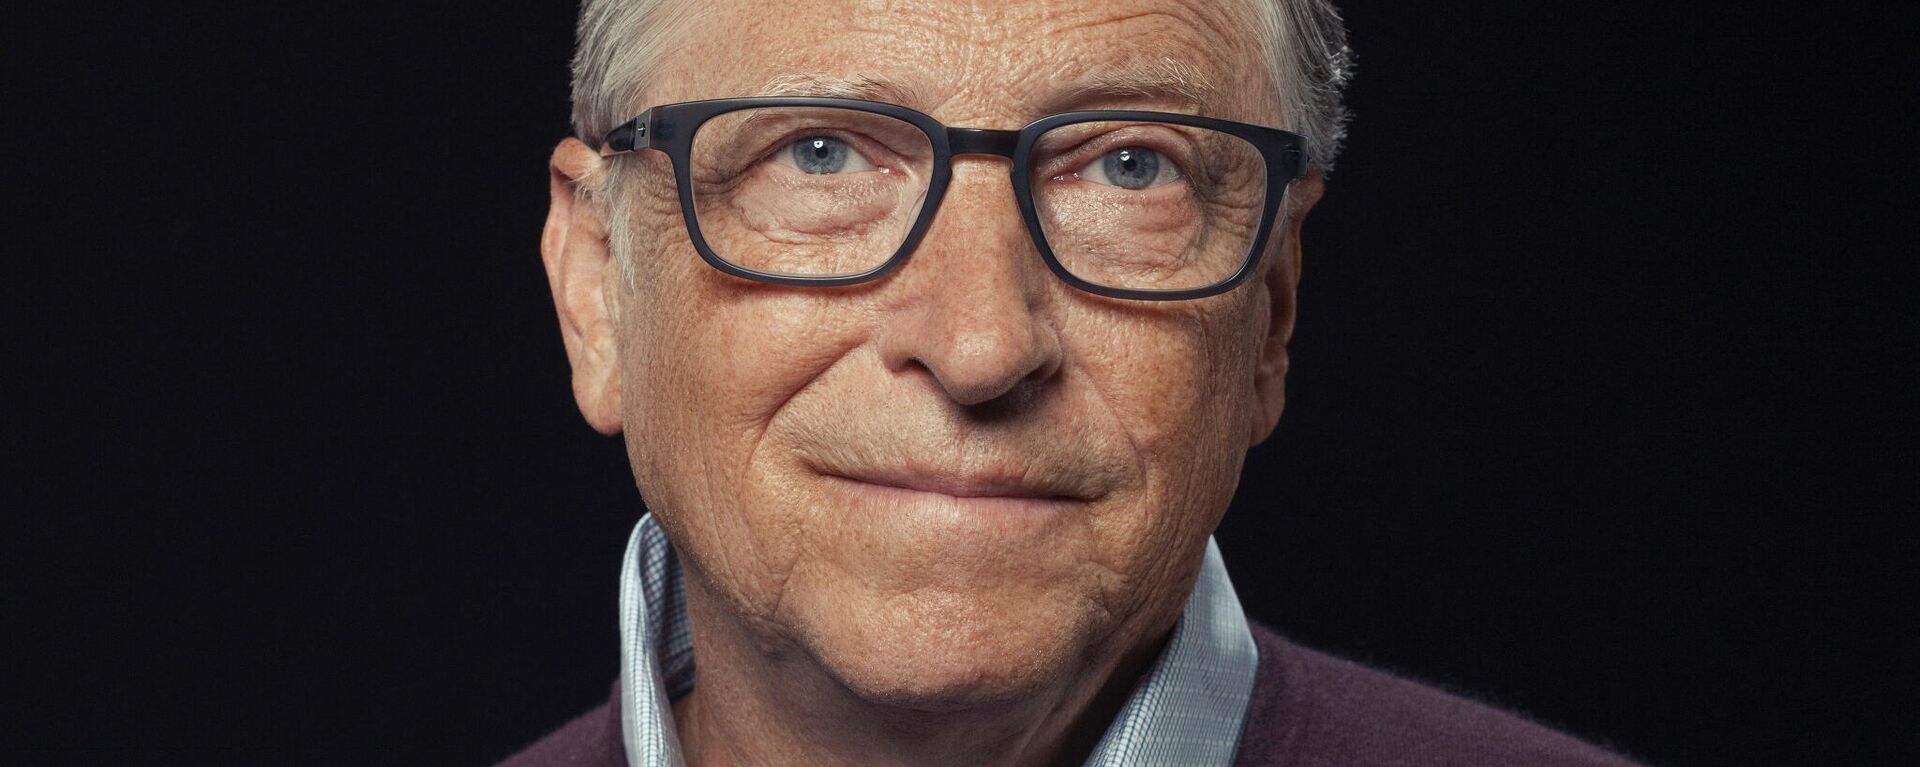 Bill Gates, fundador de Microsoft - Sputnik Mundo, 1920, 23.02.2021